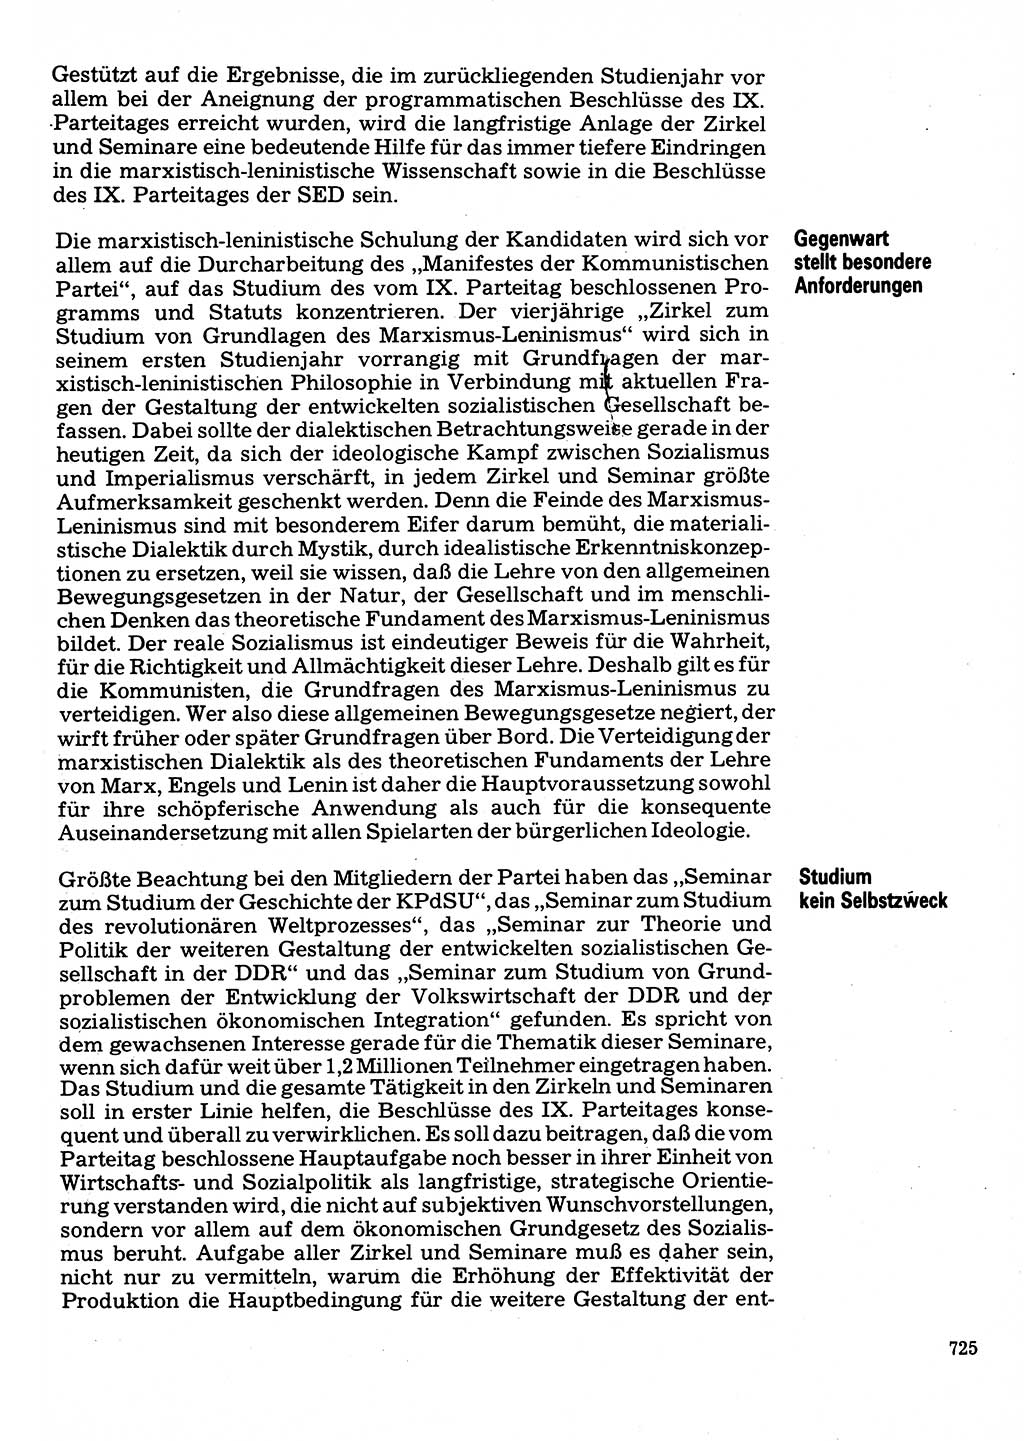 Neuer Weg (NW), Organ des Zentralkomitees (ZK) der SED (Sozialistische Einheitspartei Deutschlands) für Fragen des Parteilebens, 32. Jahrgang [Deutsche Demokratische Republik (DDR)] 1977, Seite 725 (NW ZK SED DDR 1977, S. 725)